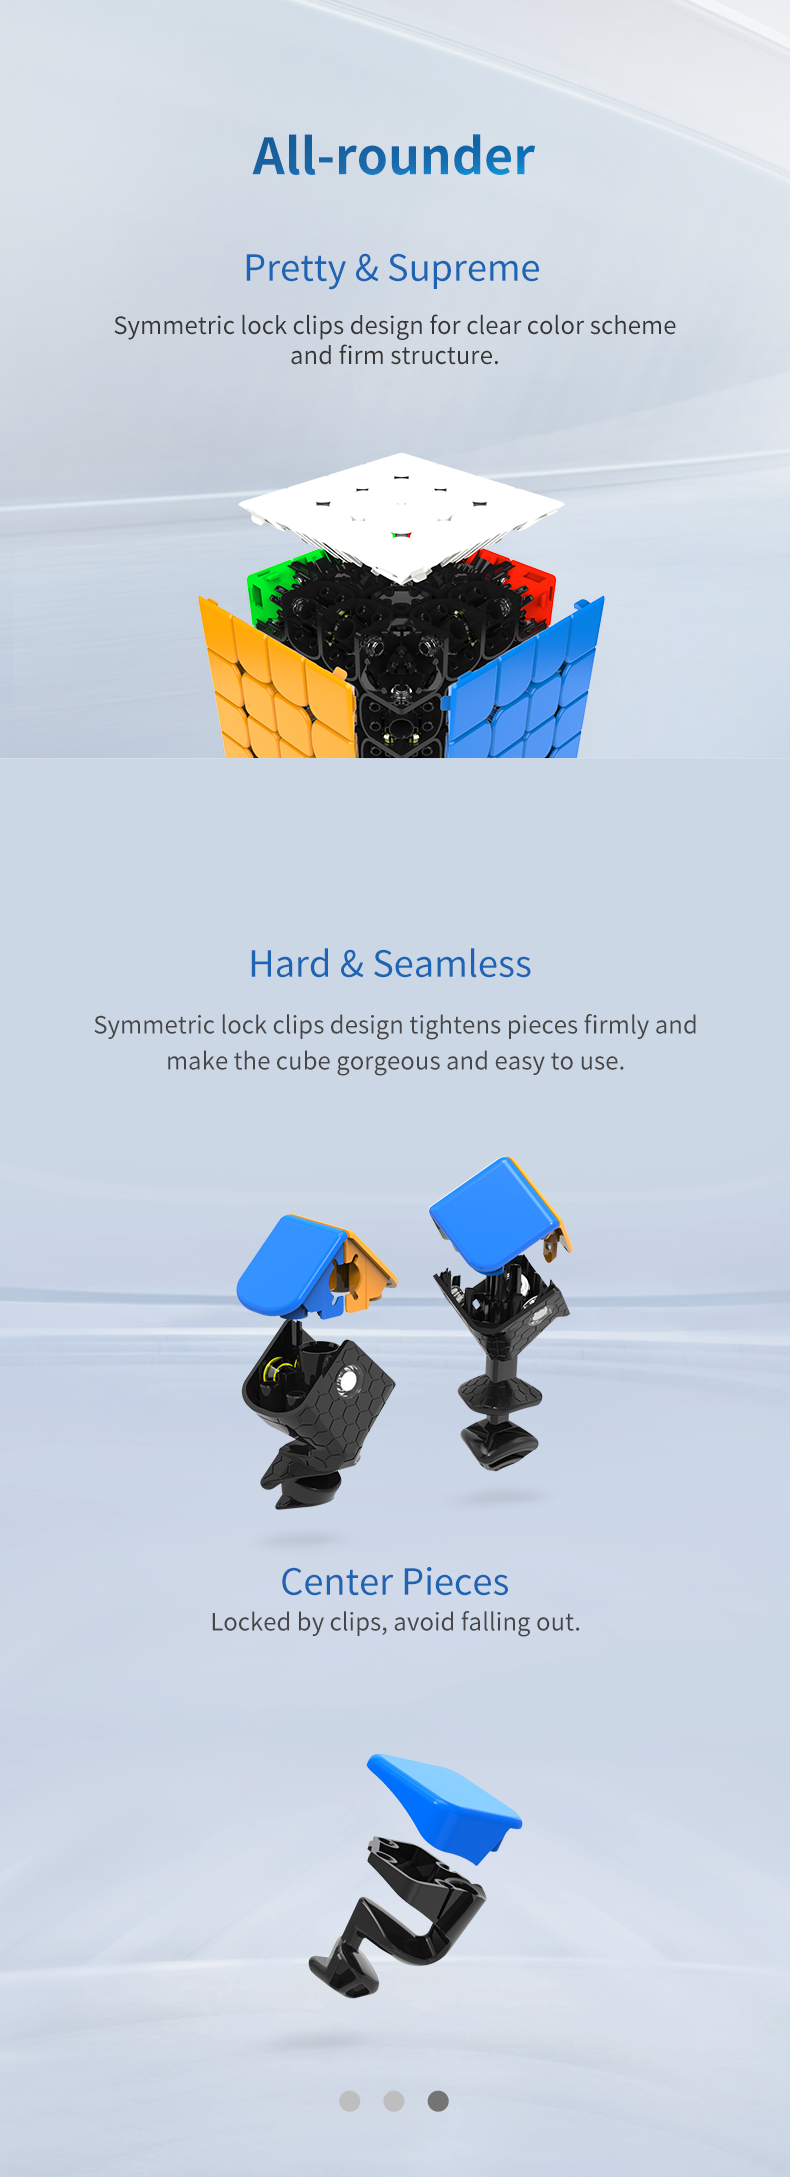 GAN460 M 4x4 Gan 460 Cubo di velocità Senza adesivo Cubo magico Gan460M  Puzzle Adesivo Adesivi Cubo Magico Giocattoli per bambini per Speedcuber –  i migliori prodotti nel negozio online Joom Geek